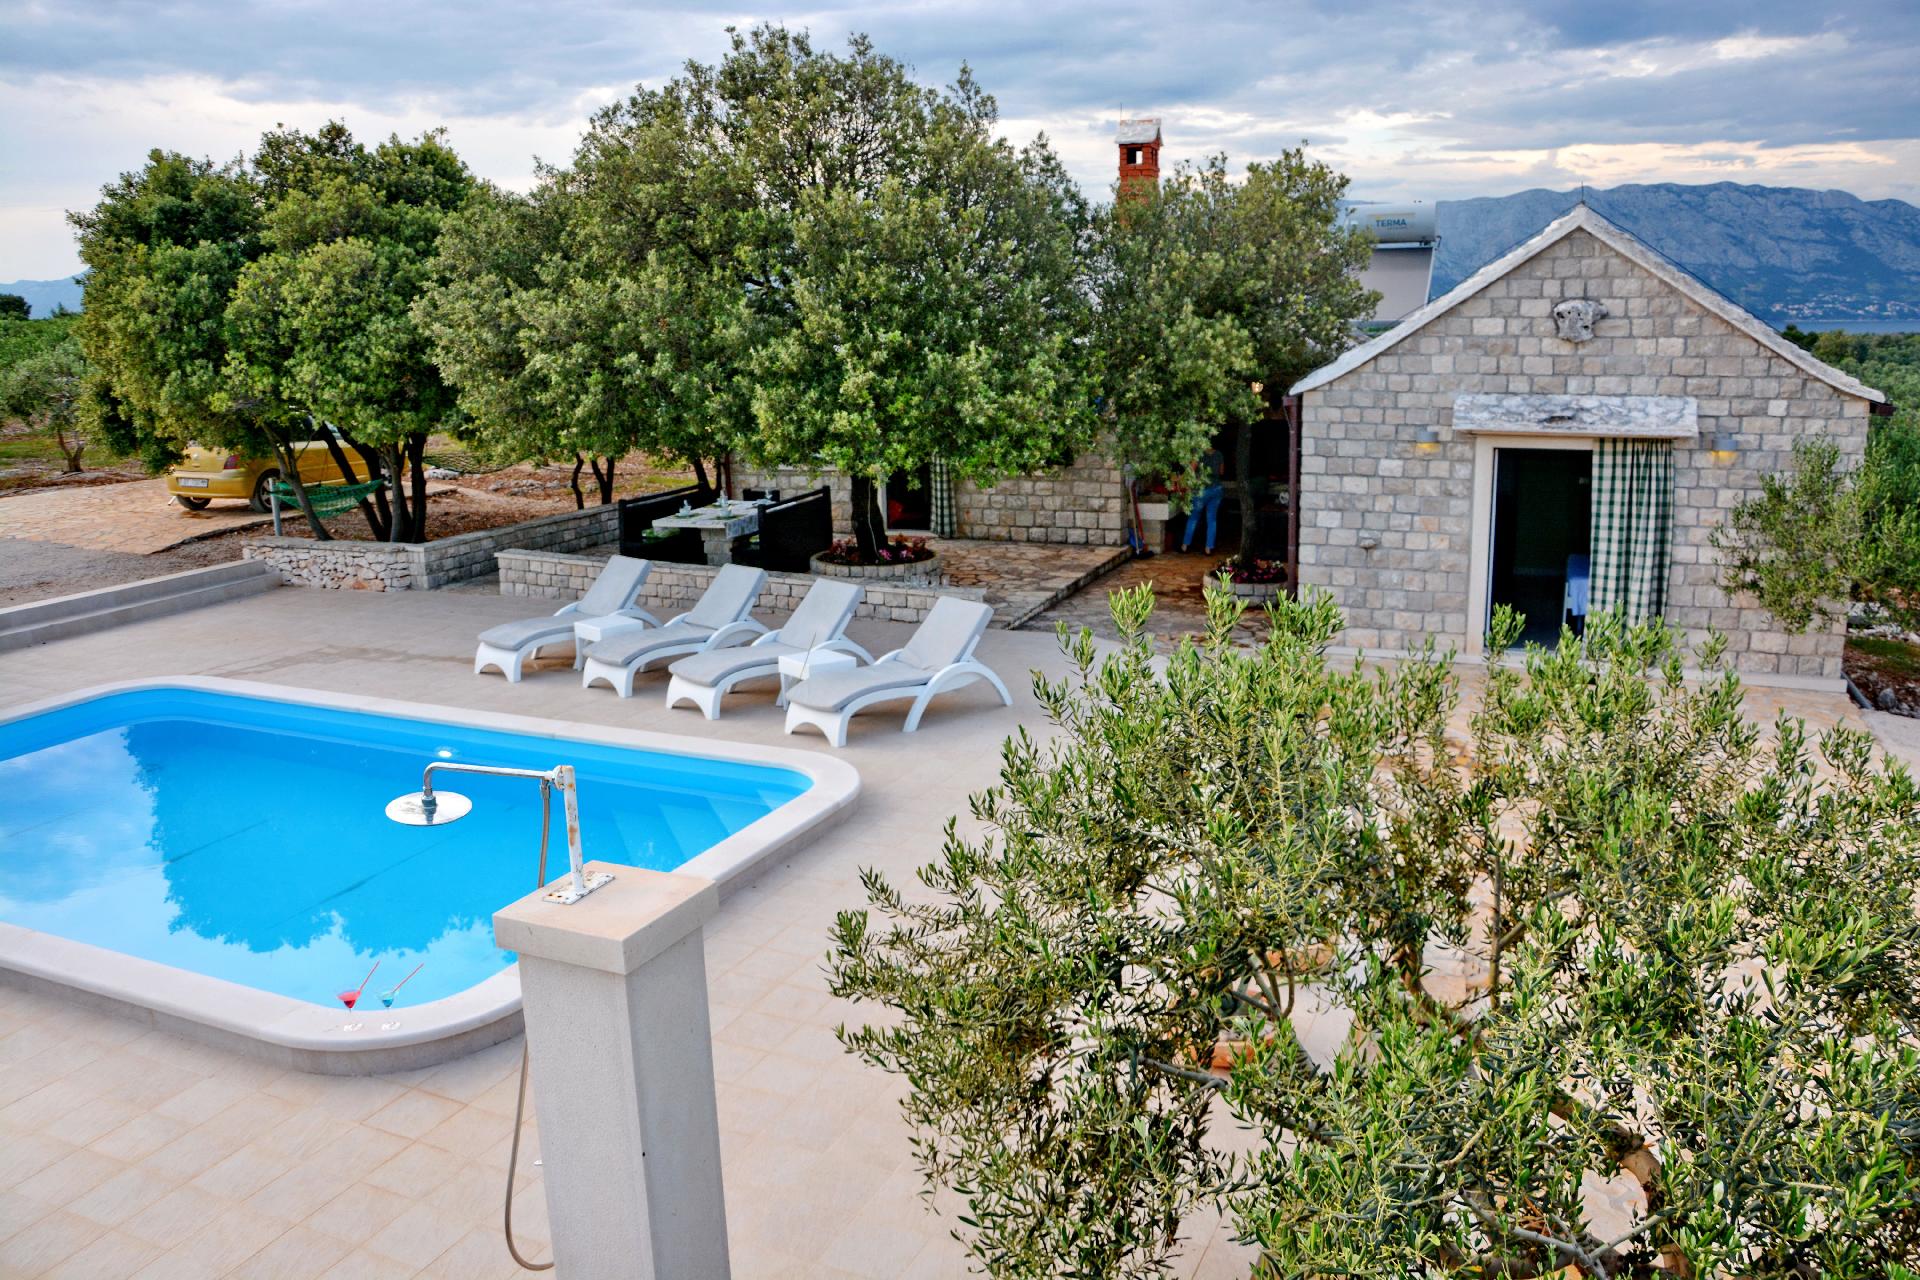 Ferienhaus mit Terrasse und Pool in herrlicher Nat   kroatische Inseln